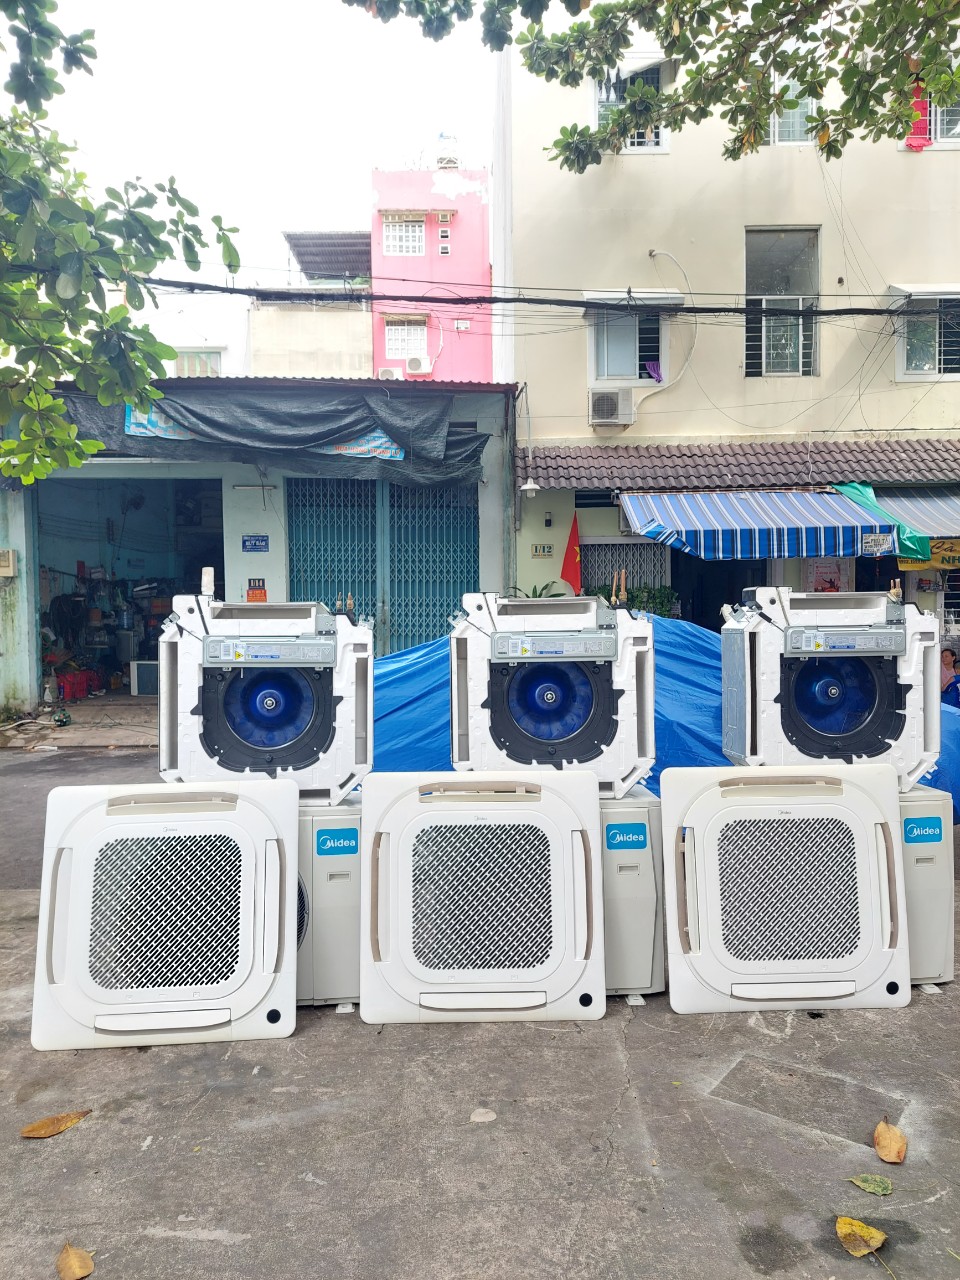 Thanh lý máy lạnh cũ uy tín Bình Phước | Vì sao chọn Thanh lý - bán máy lạnh cũ ở Bình Phước để thu mua, thanh lý máy lạnh cũ